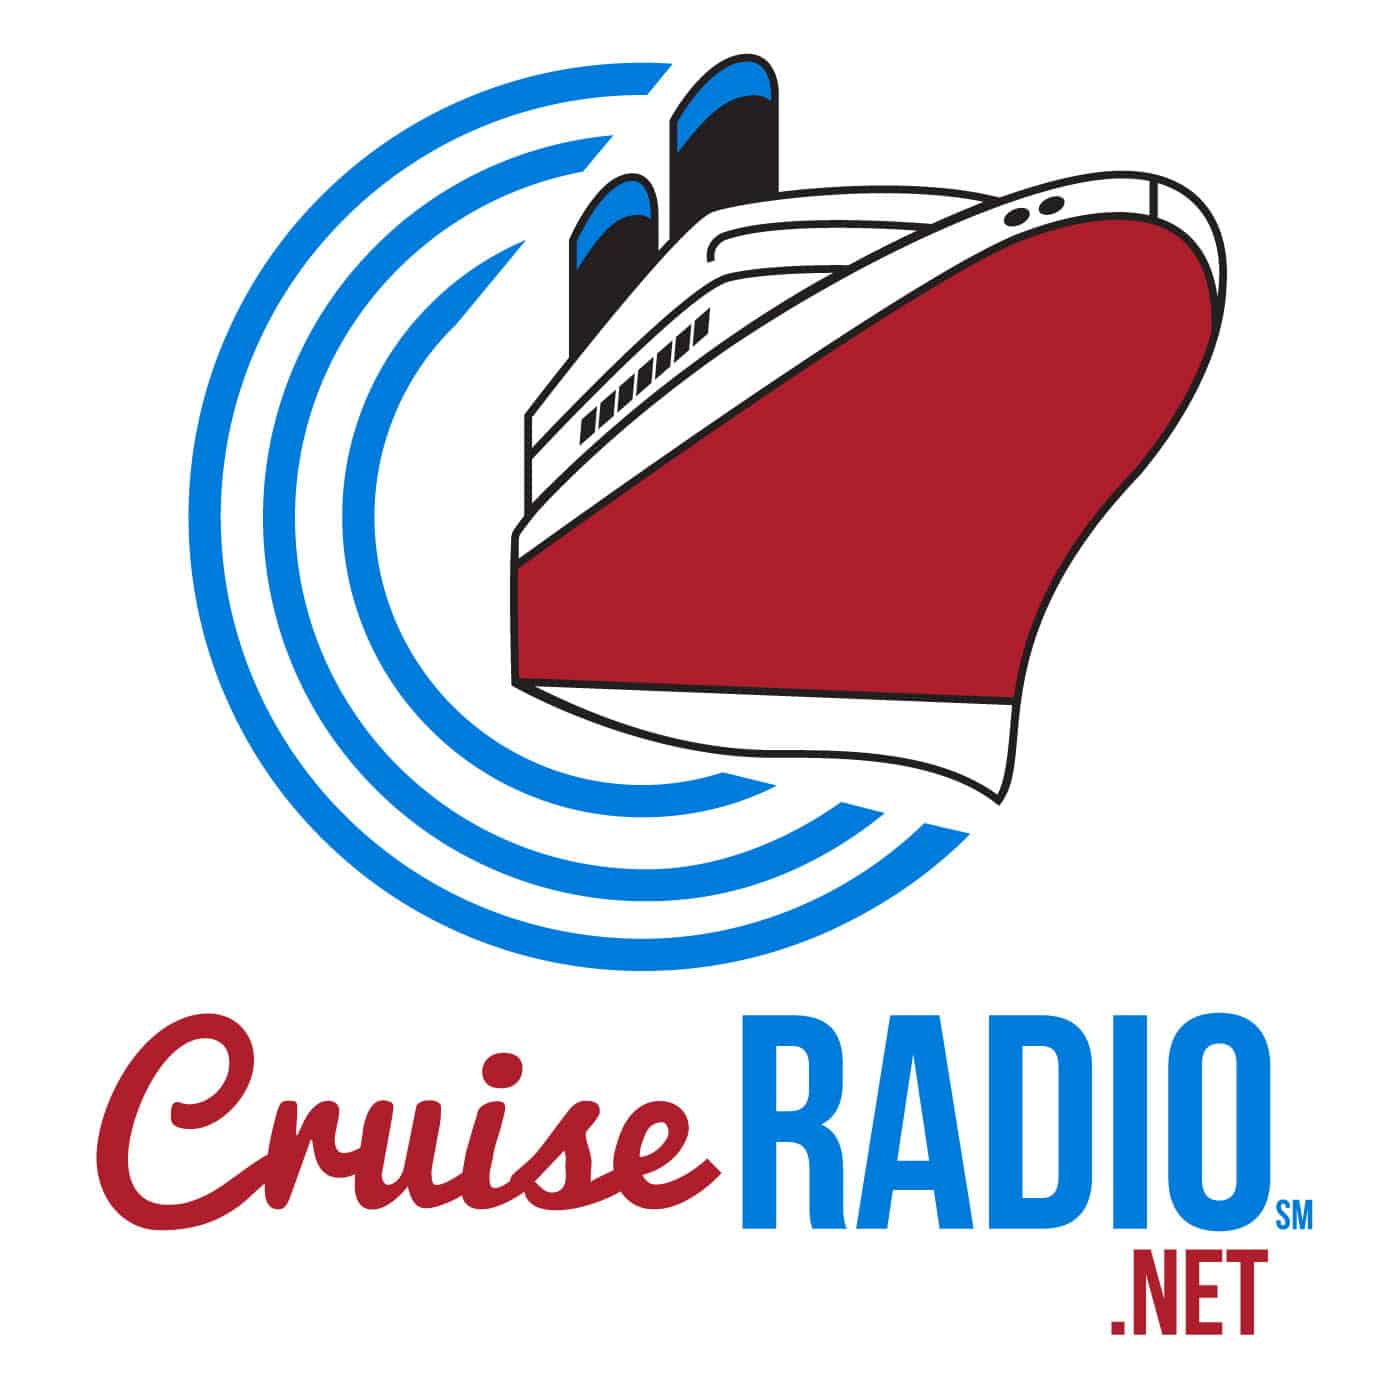 (c) Cruiseradio.net